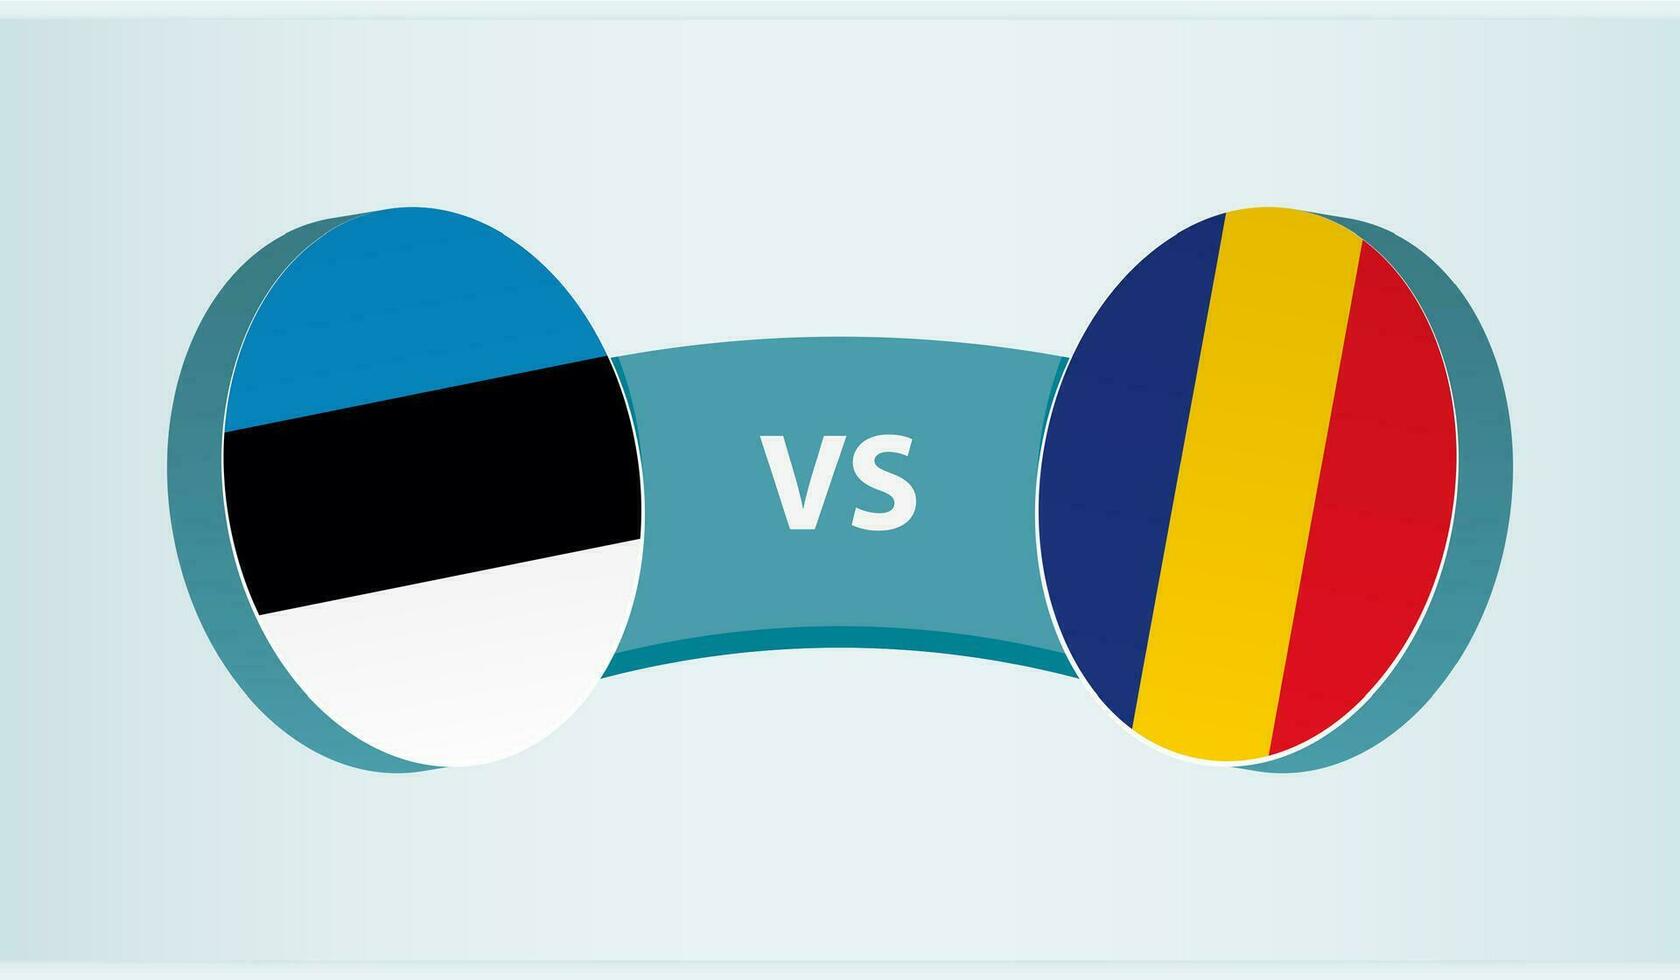 estland mot Rumänien, team sporter konkurrens begrepp. vektor